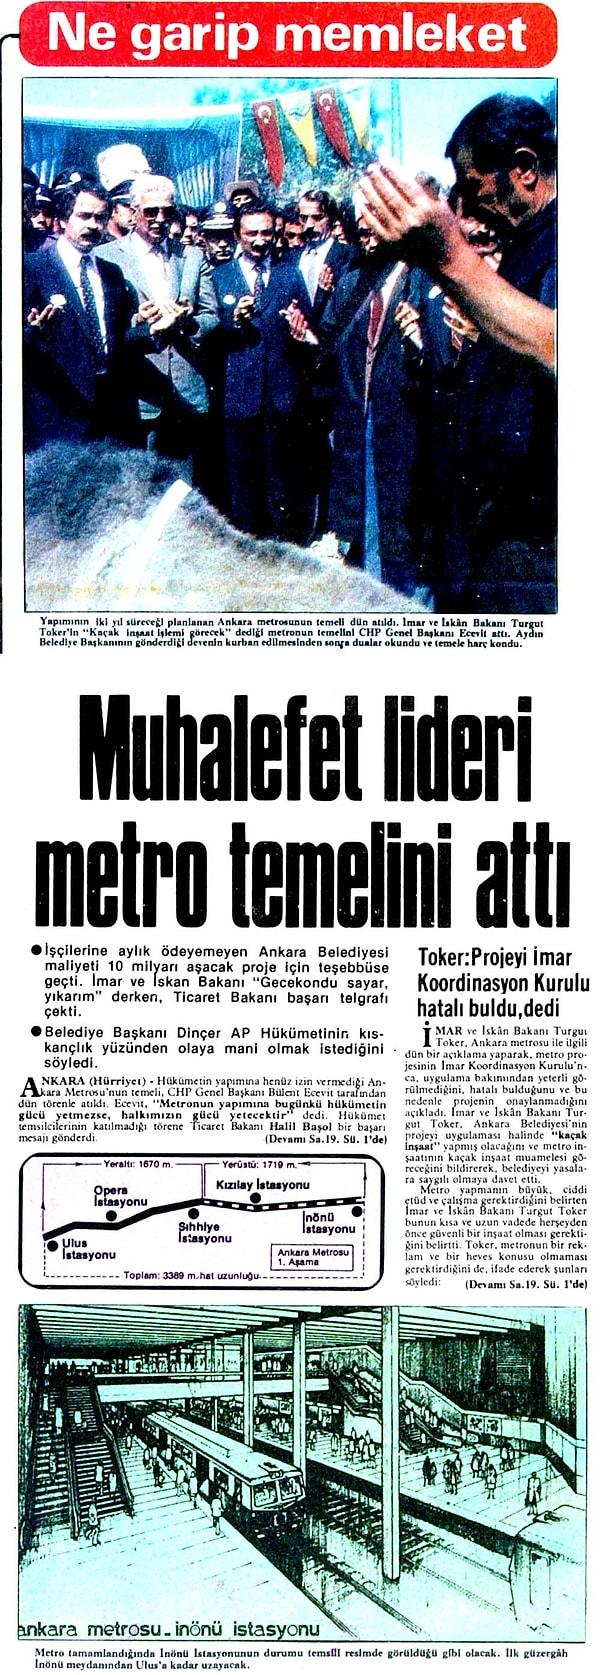 10 Eylül: Muhalefet lideri Ecevit, Ankara metrosunun temelini atıyor.